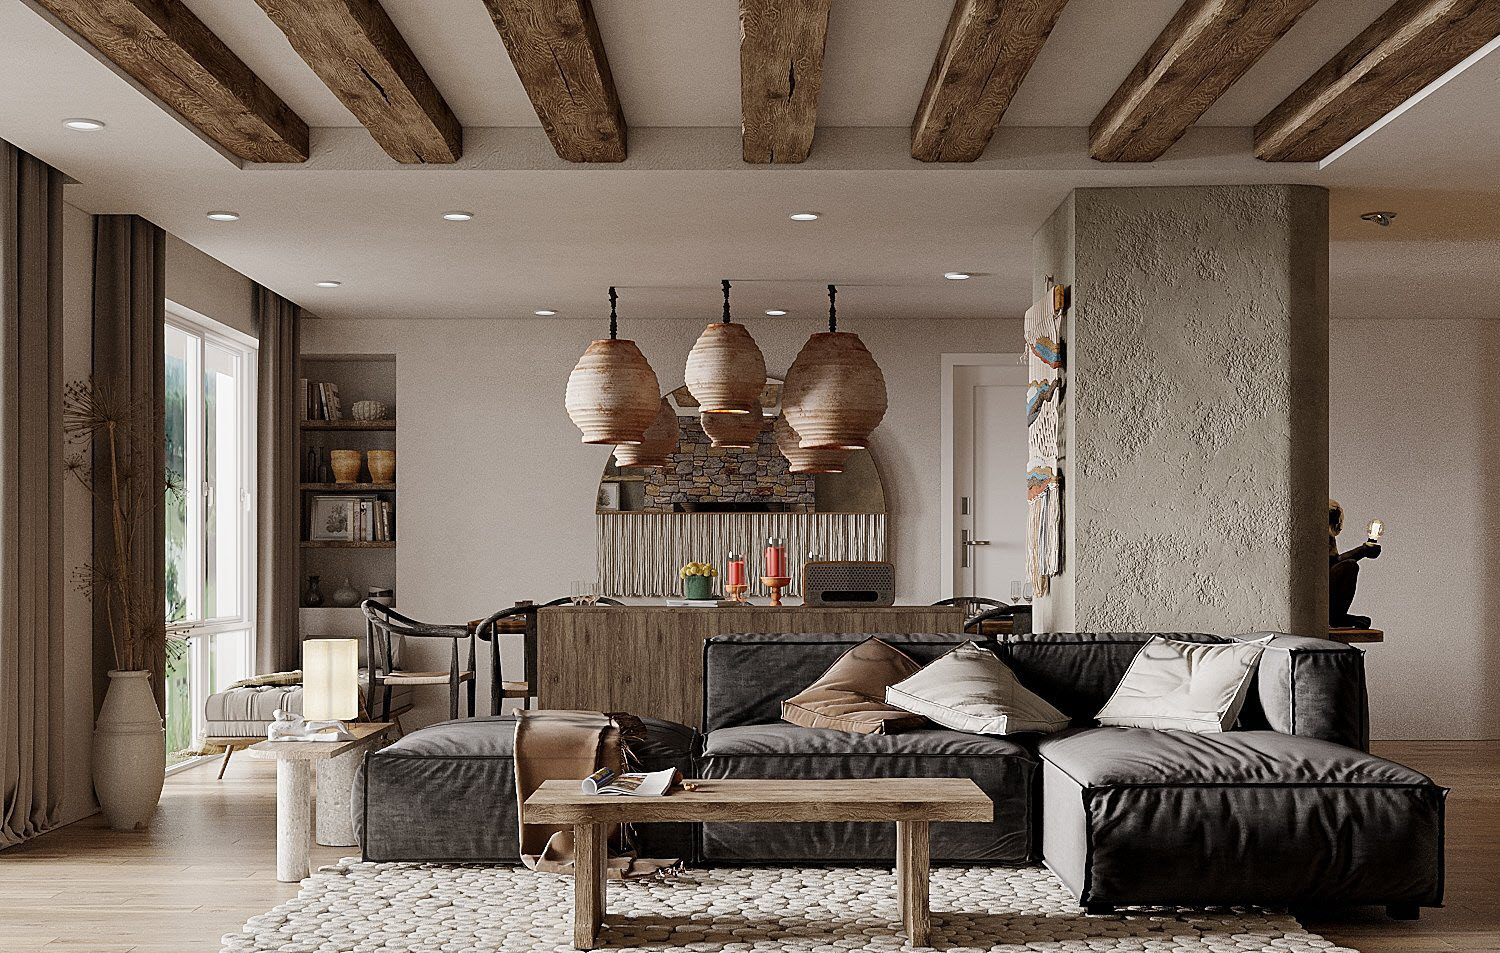 Dầm gỗ kết nối hài hòa với bàn cà phê và bar mini từ phòng bếp tạo sự đồng điệu, thống nhất trong từng đường nét thiết kế nội thất.